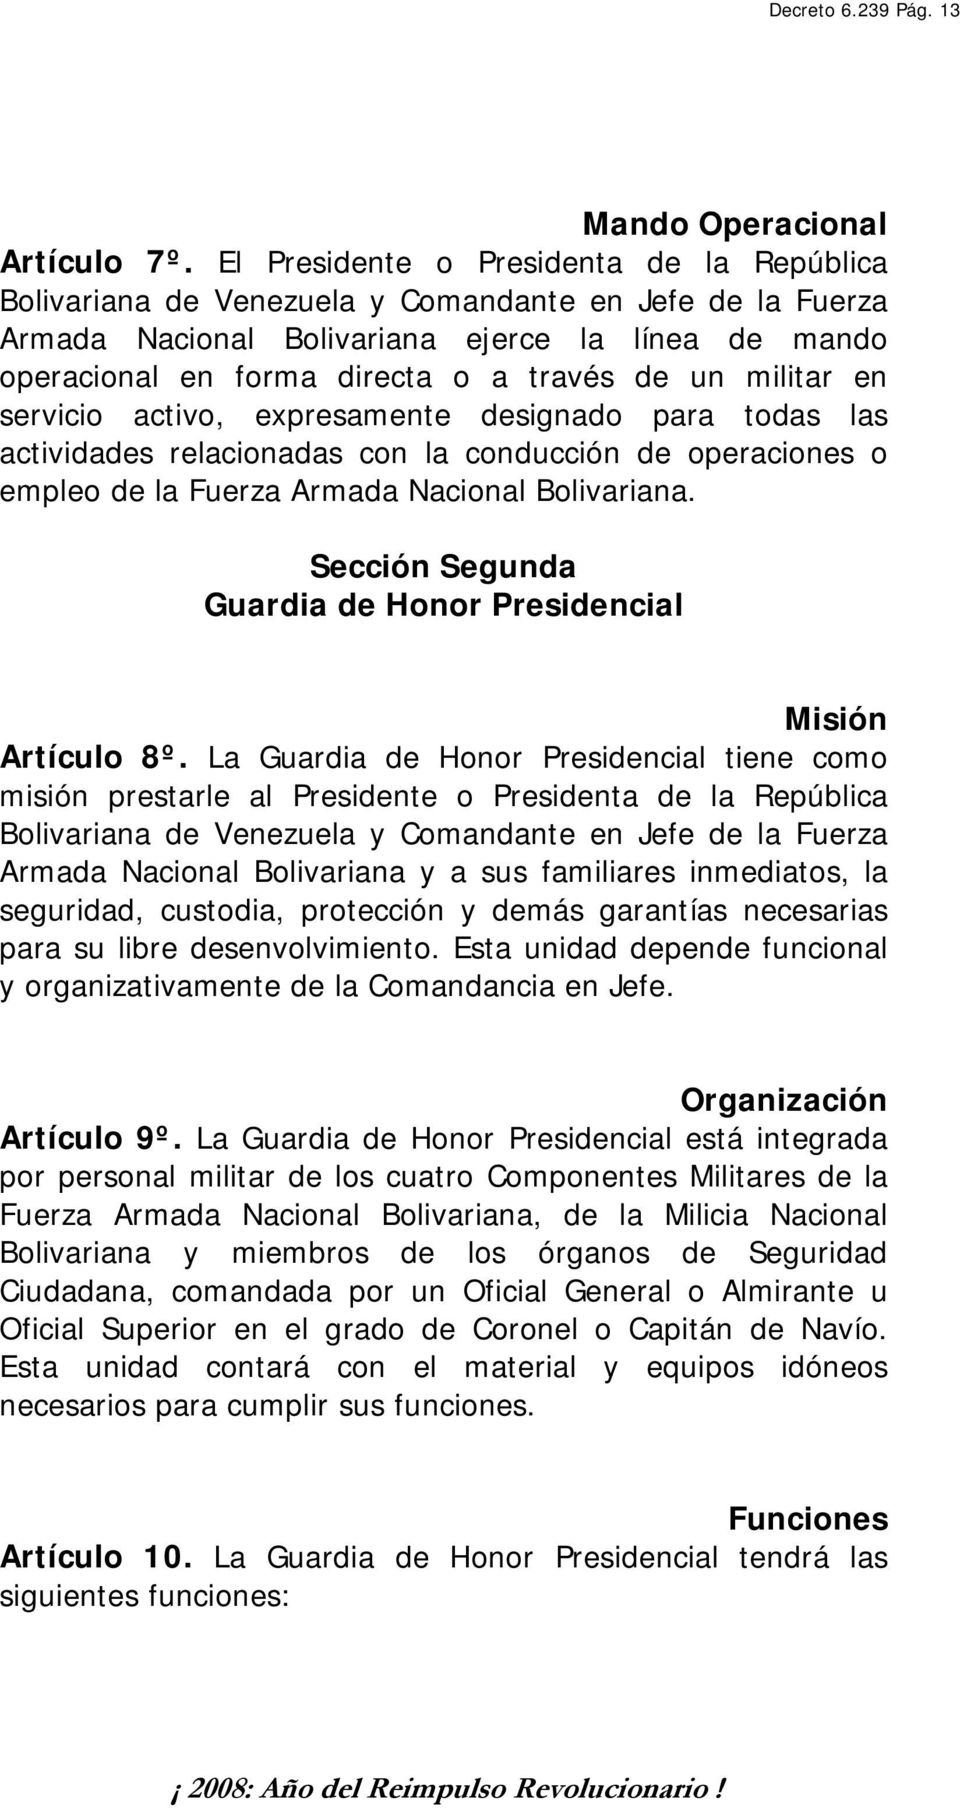 un militar en servicio activo, expresamente designado para todas las actividades relacionadas con la conducción de operaciones o empleo de la Fuerza Armada Nacional Bolivariana.